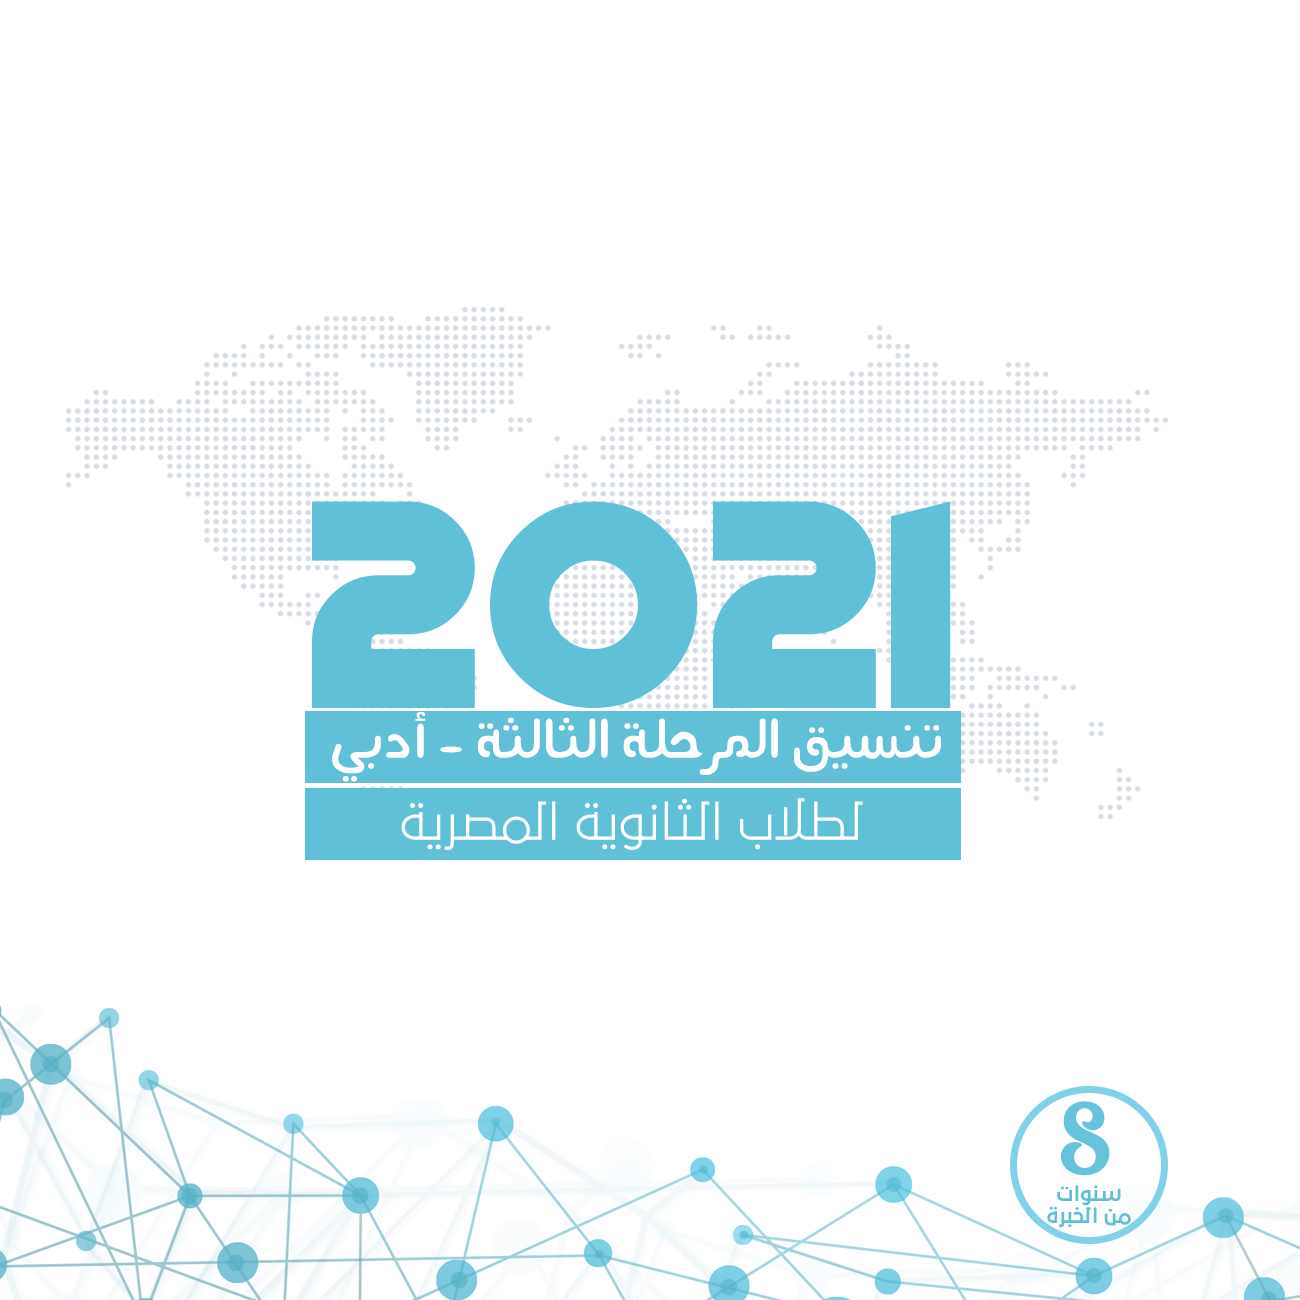 تنسيق المرحلة الثالثة للثانوية العامة المصرية 2021 - أدبي